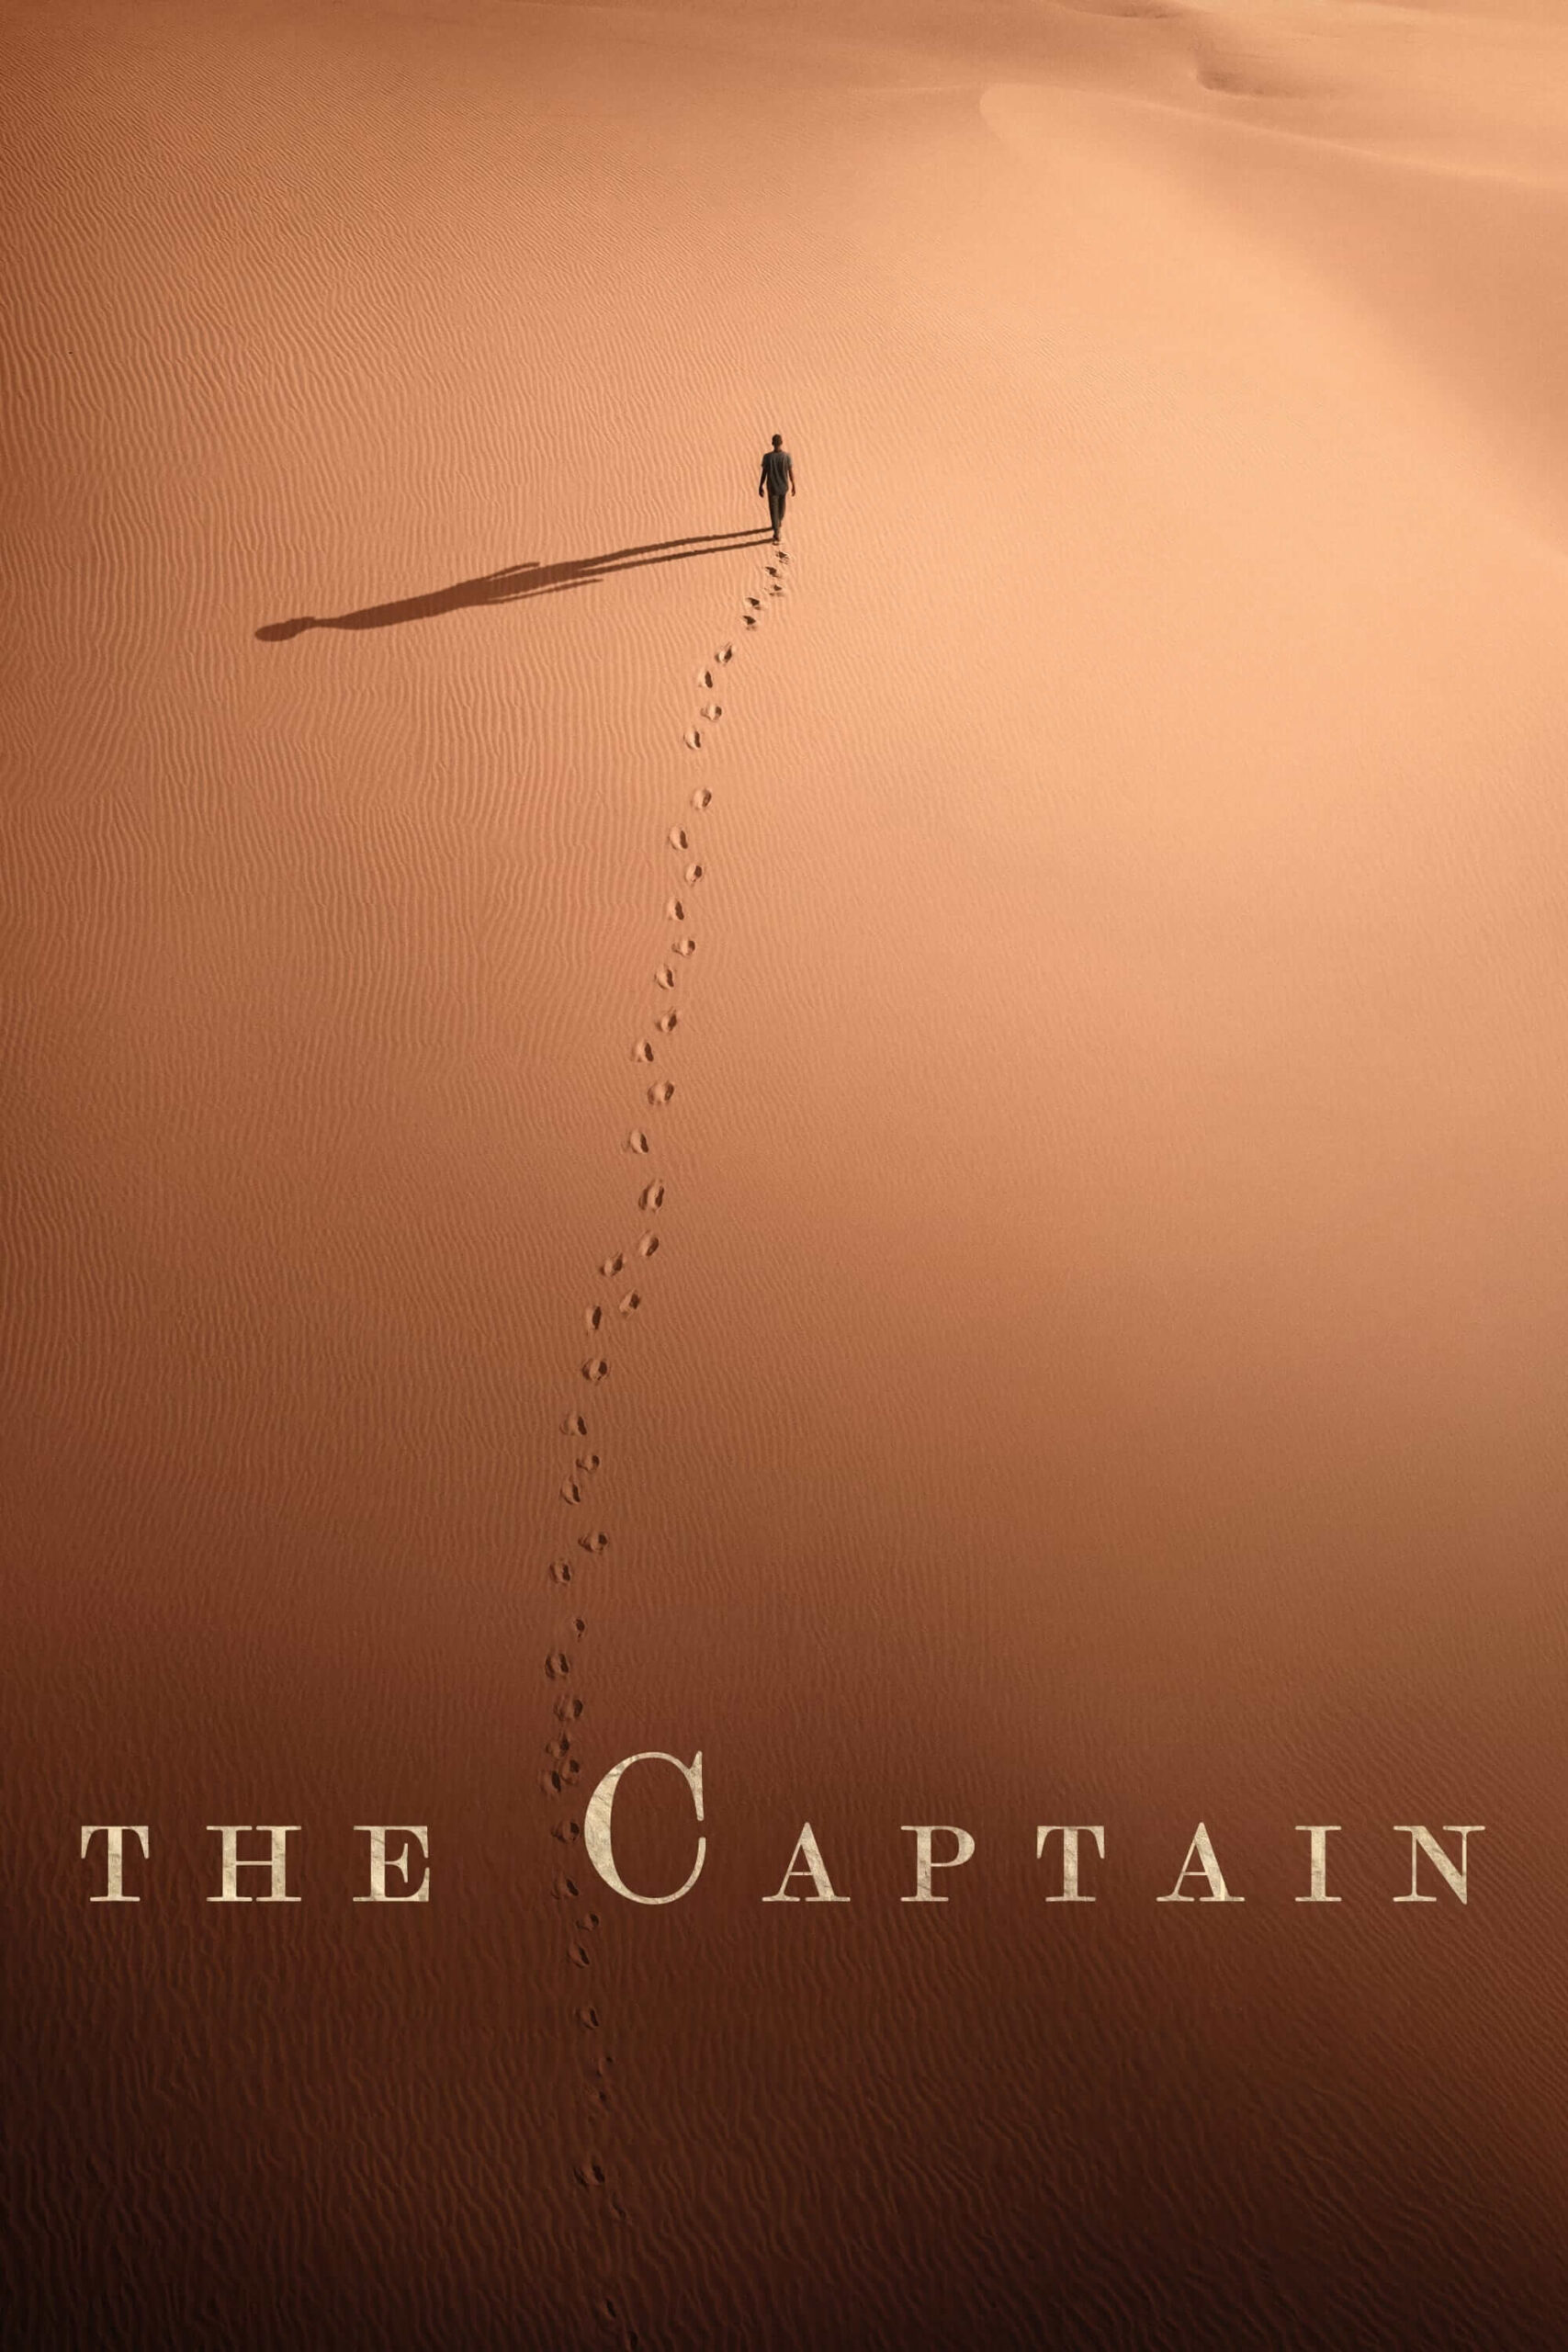 من کاپیتان هستم (Io Capitano)